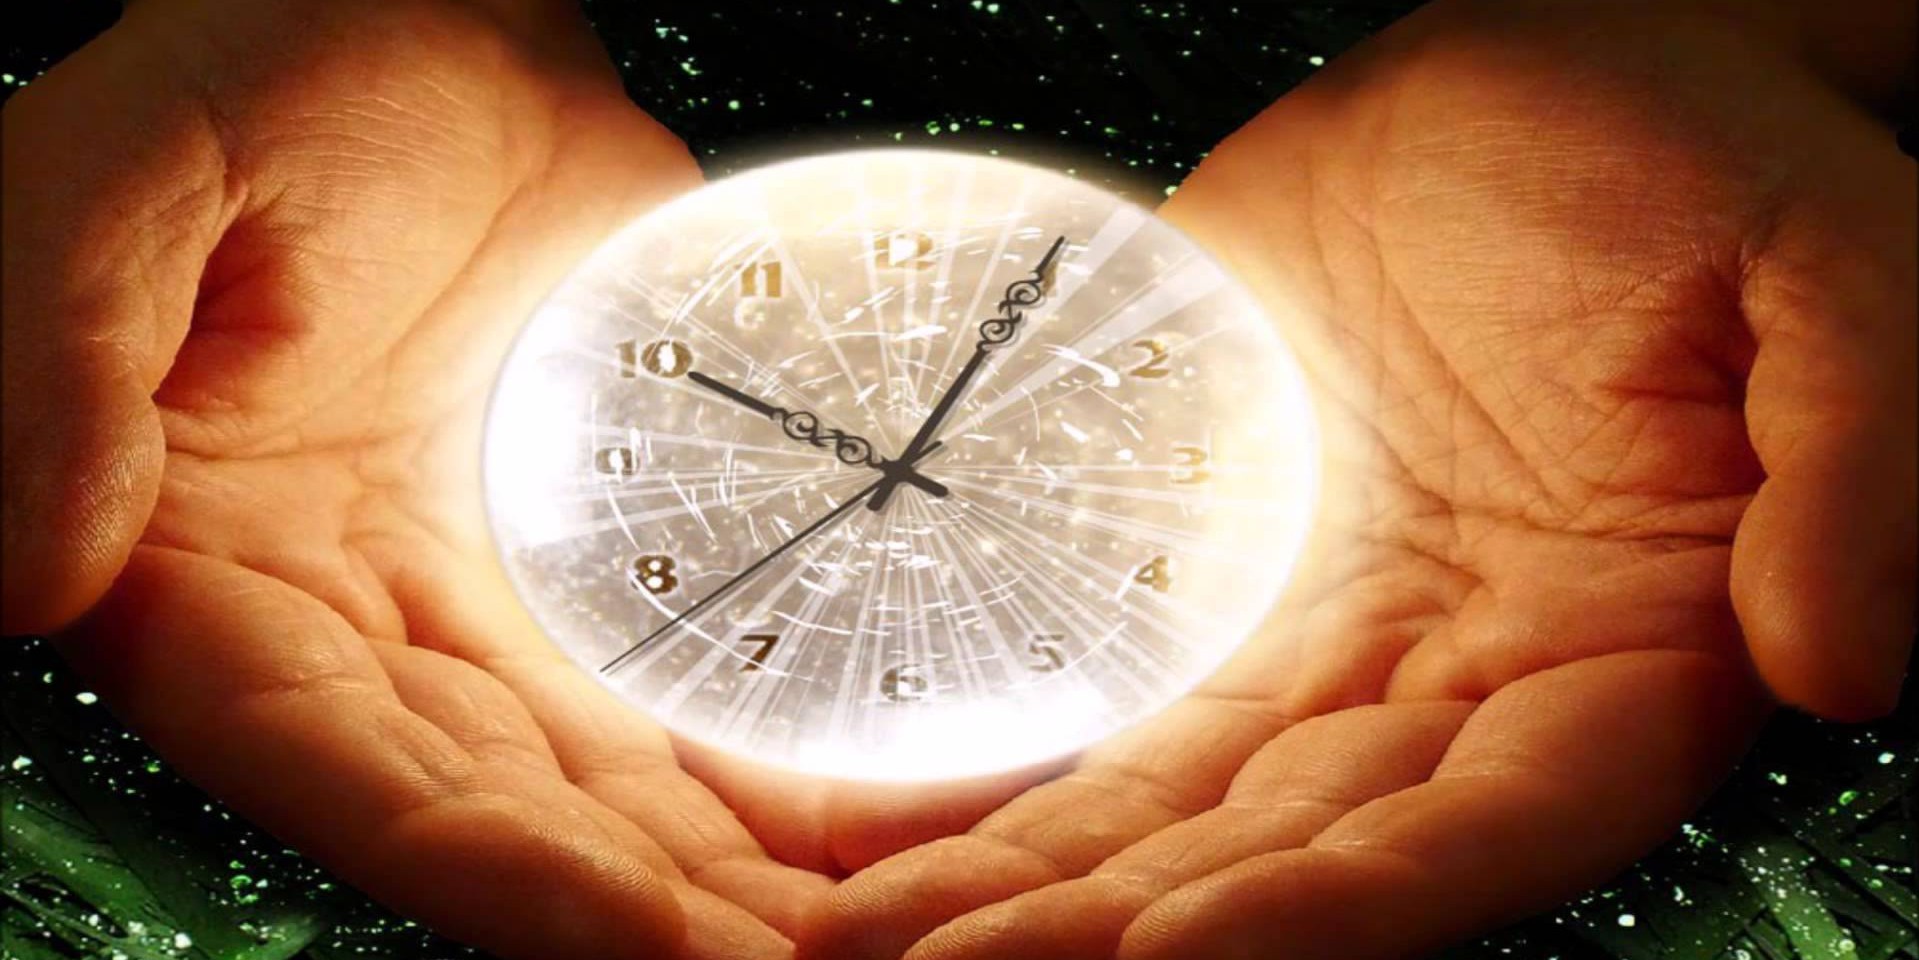 Центральный лет жизни. Часы жизни. Магические часы. Фото на тему время. Часы нашей жизни.